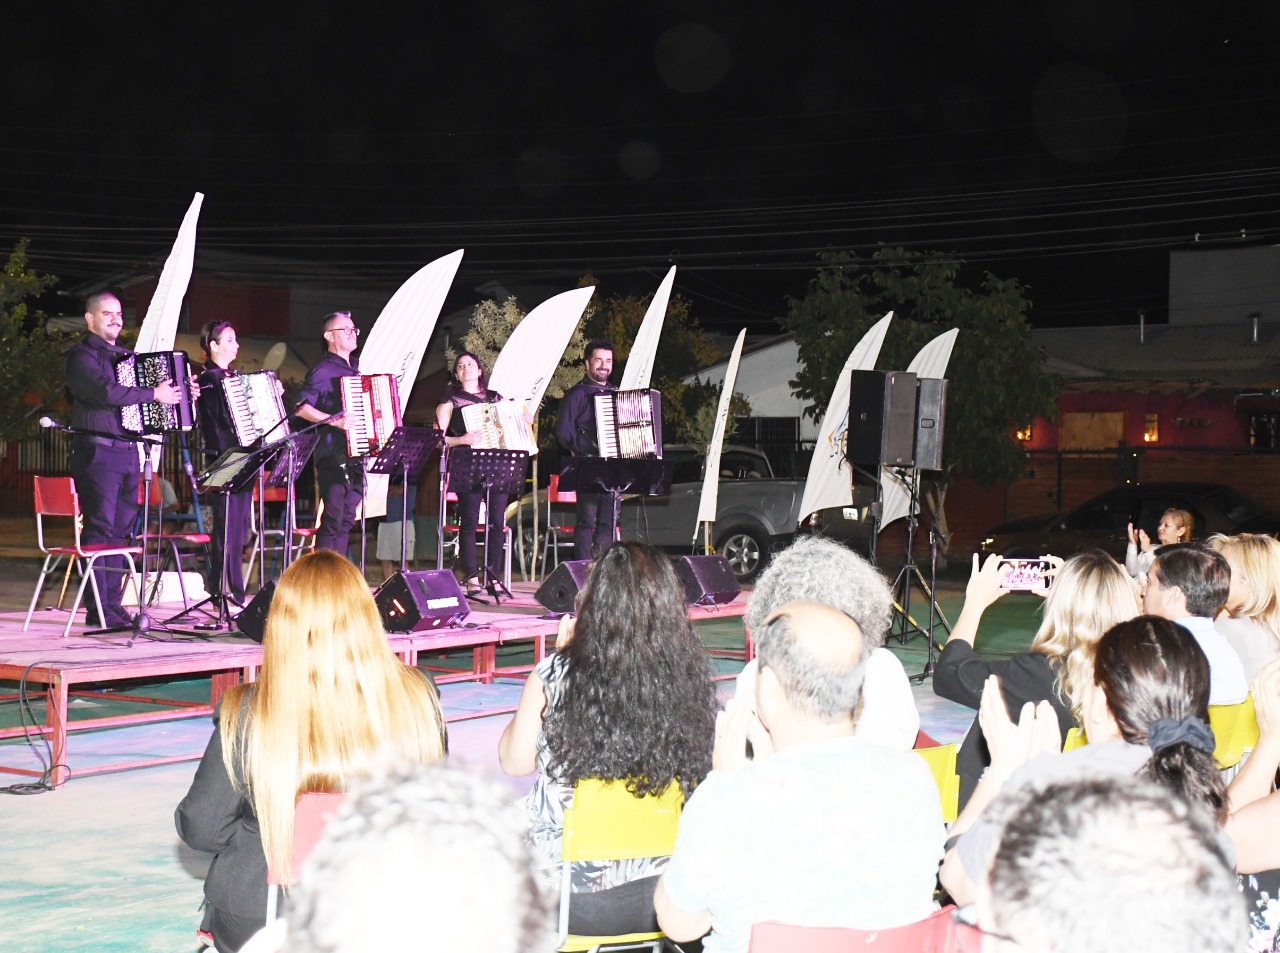 LOS ANDES: Los barrios de Los Andes respondieron a la invitación de conciertos de música clásica